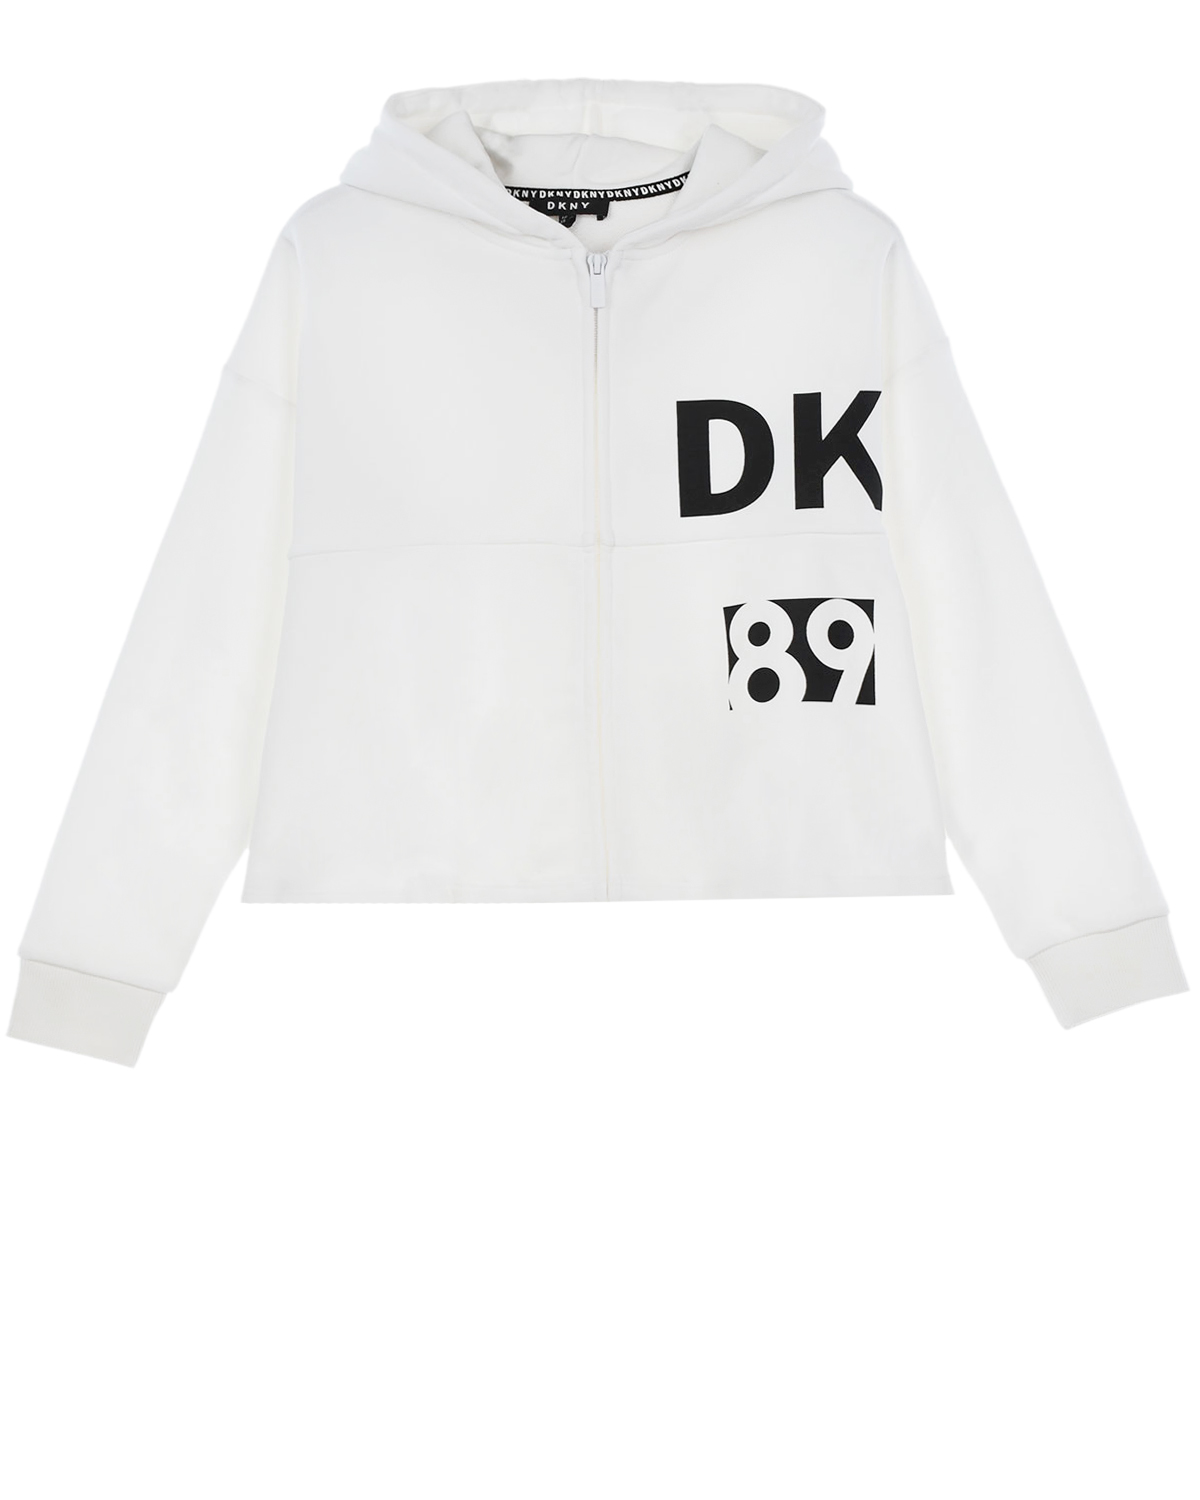 Купить Белая спортивная куртка с воланом DKNY детская, Белый, 100%хлопок, 95%хлопок+5%эластан